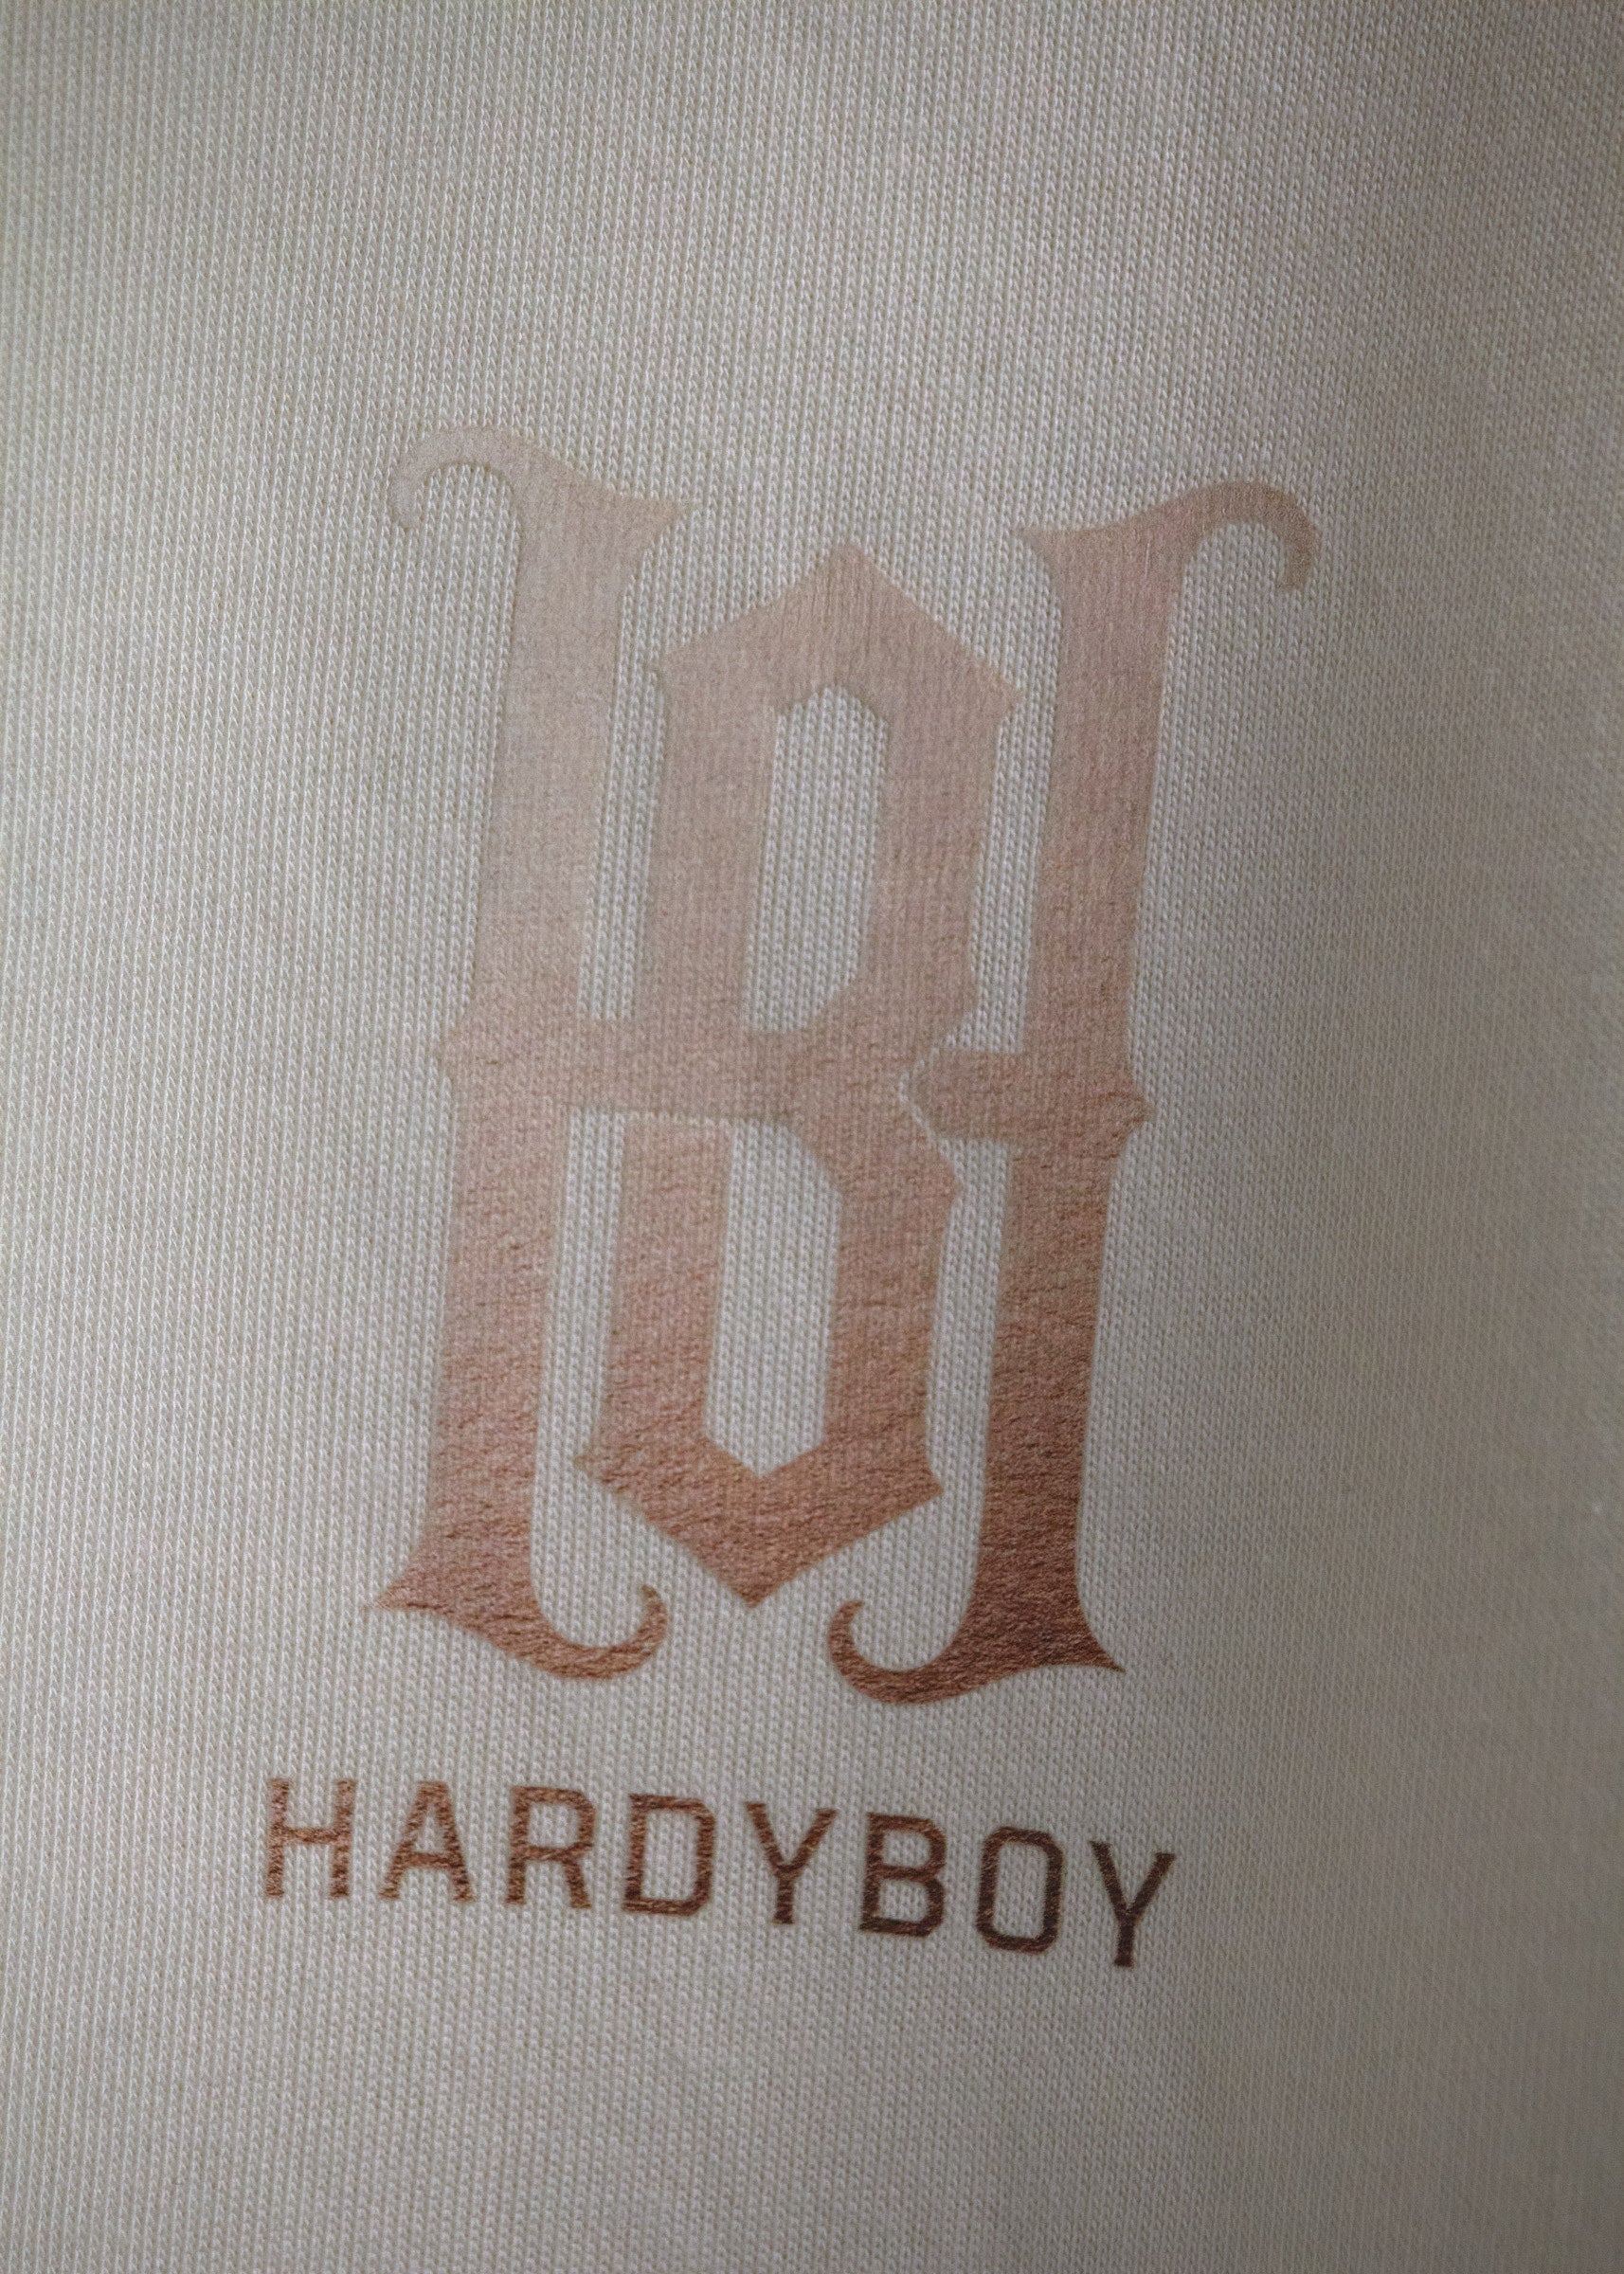 Bone hoodie with Hardyboy monologo on left chest